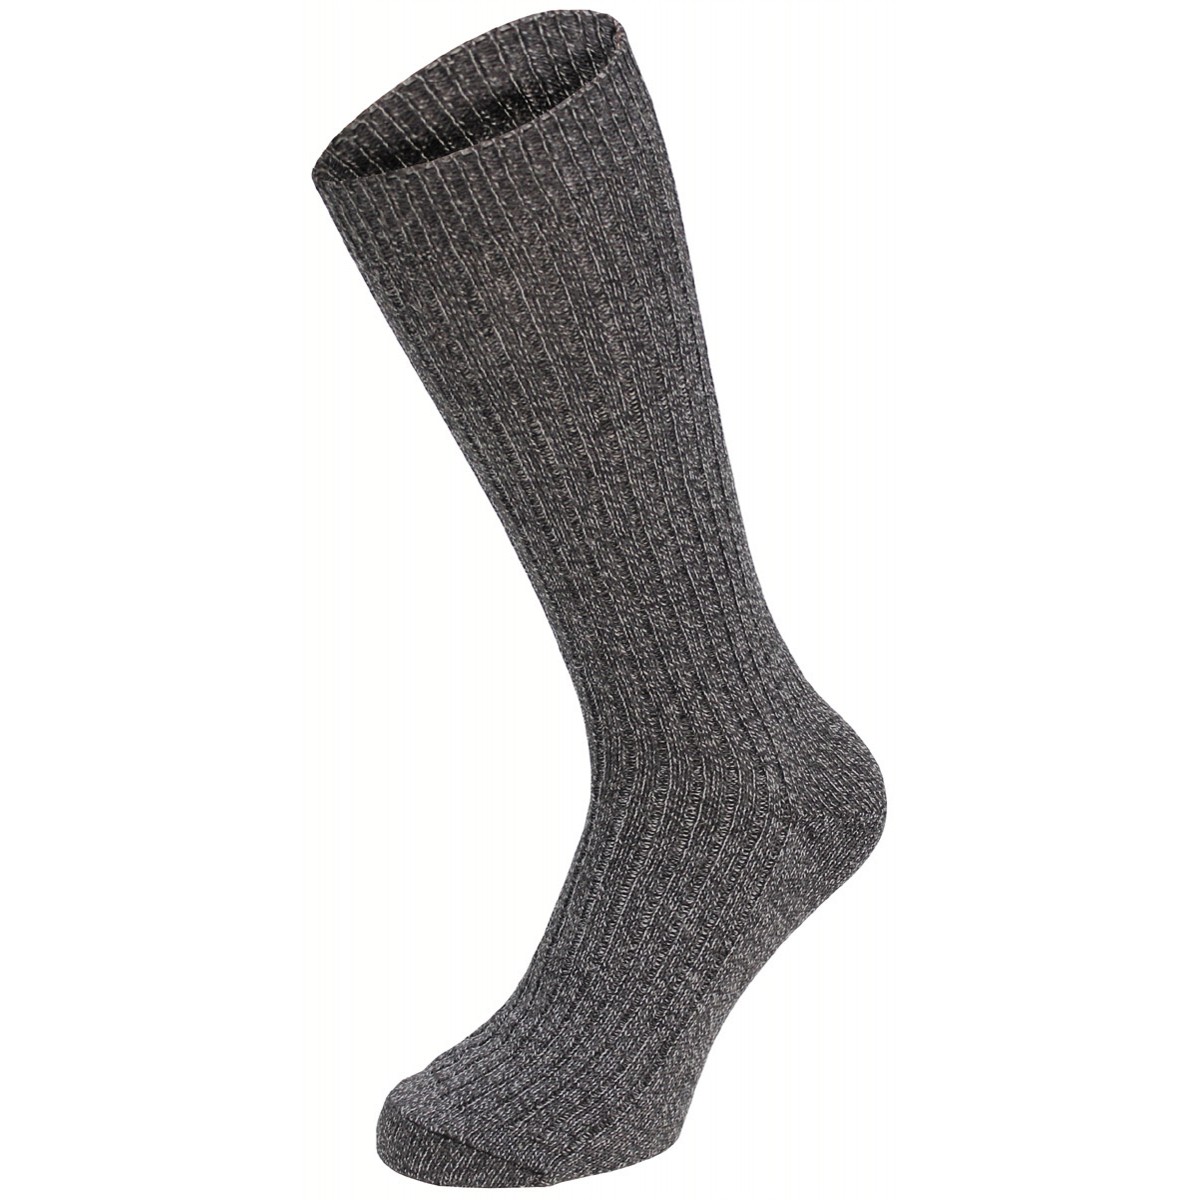 Ponožky styl BW s patou extra vysoké - šedé, 39-40